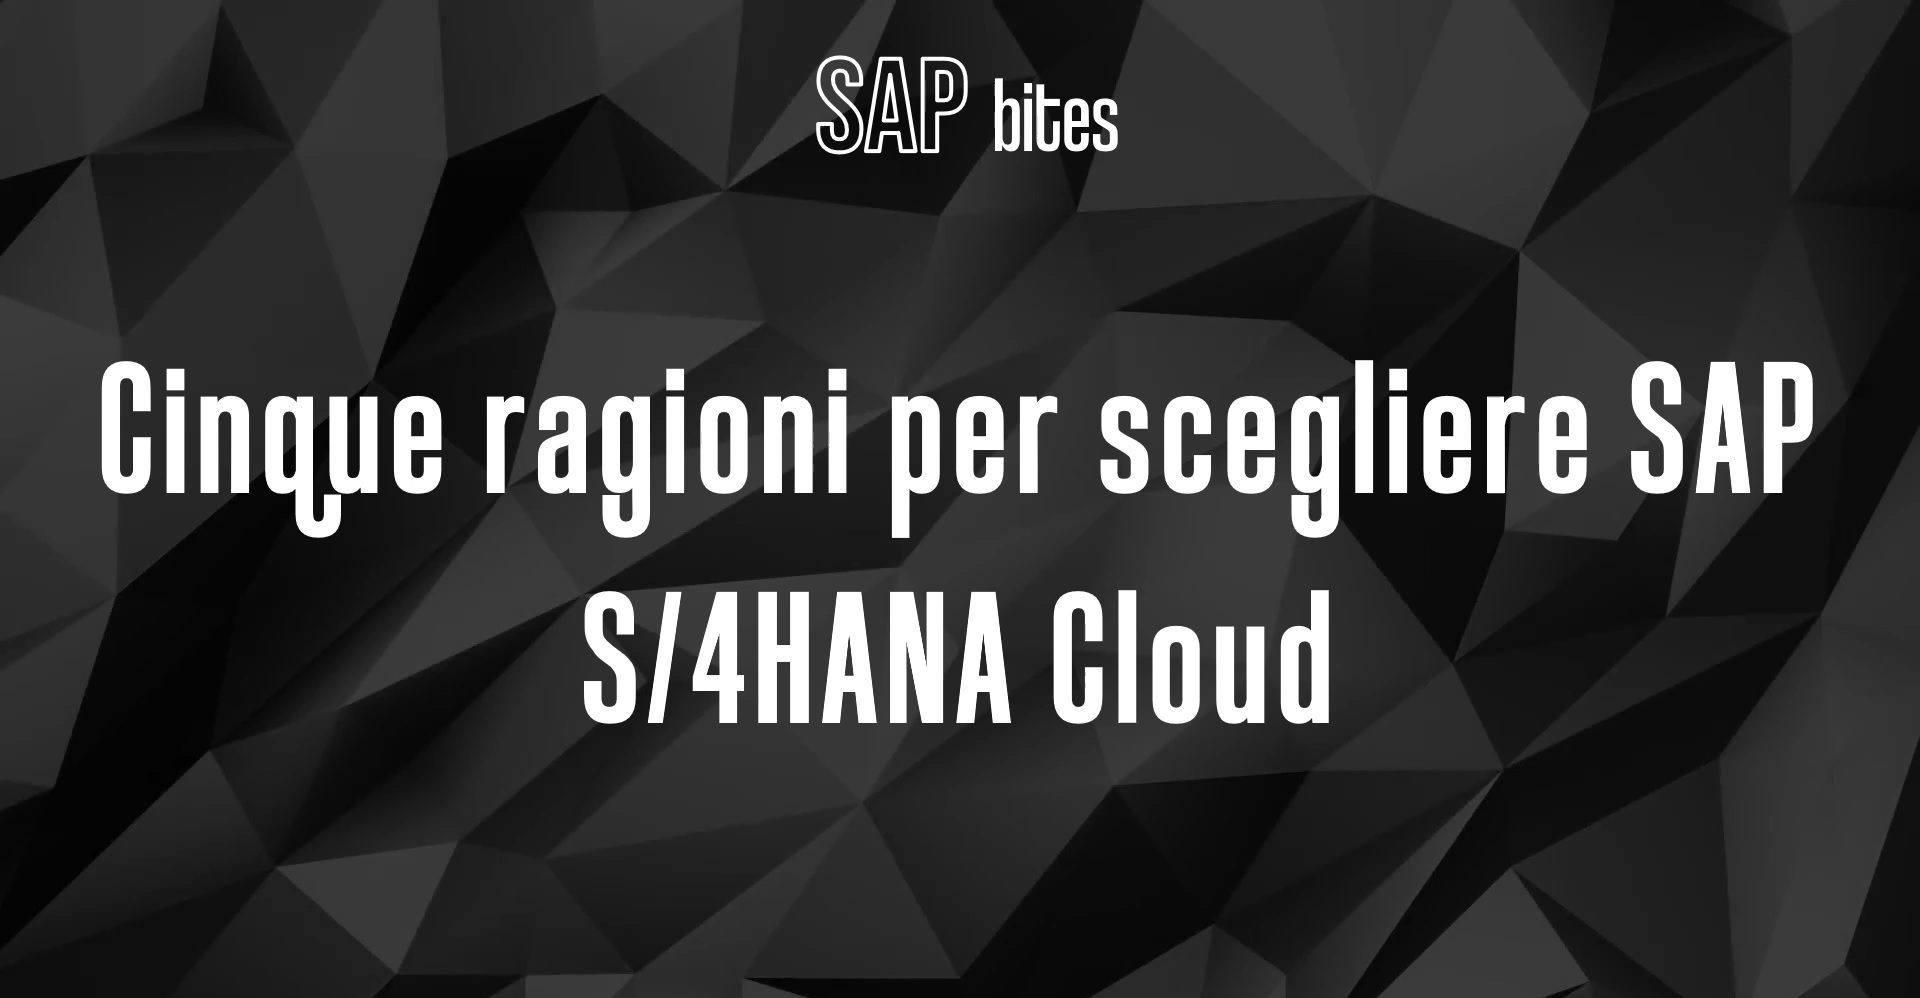 SAP_Bites_S4HANA_Cloud